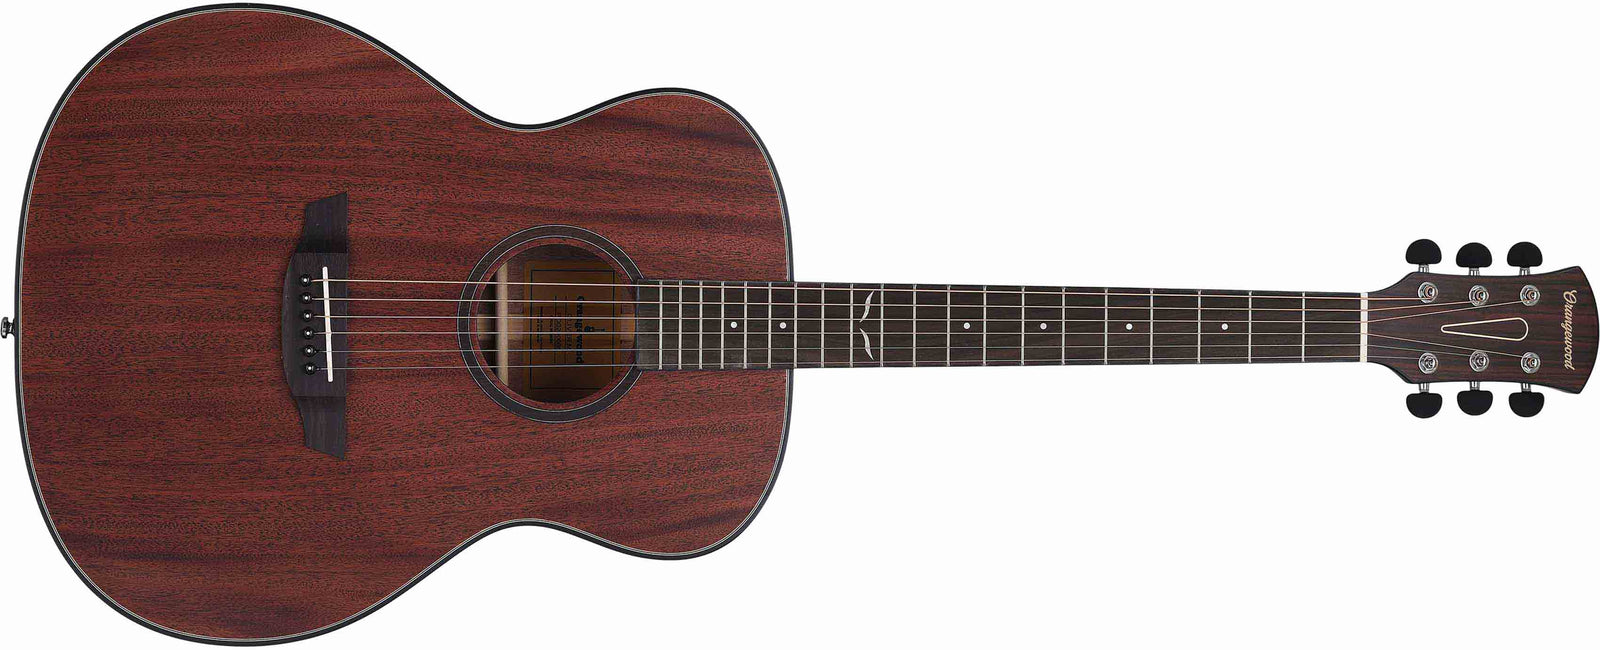 Shop Mahogany Acoustic Guitars Online  Orangewood Guitars - Orangewood  Guitars India